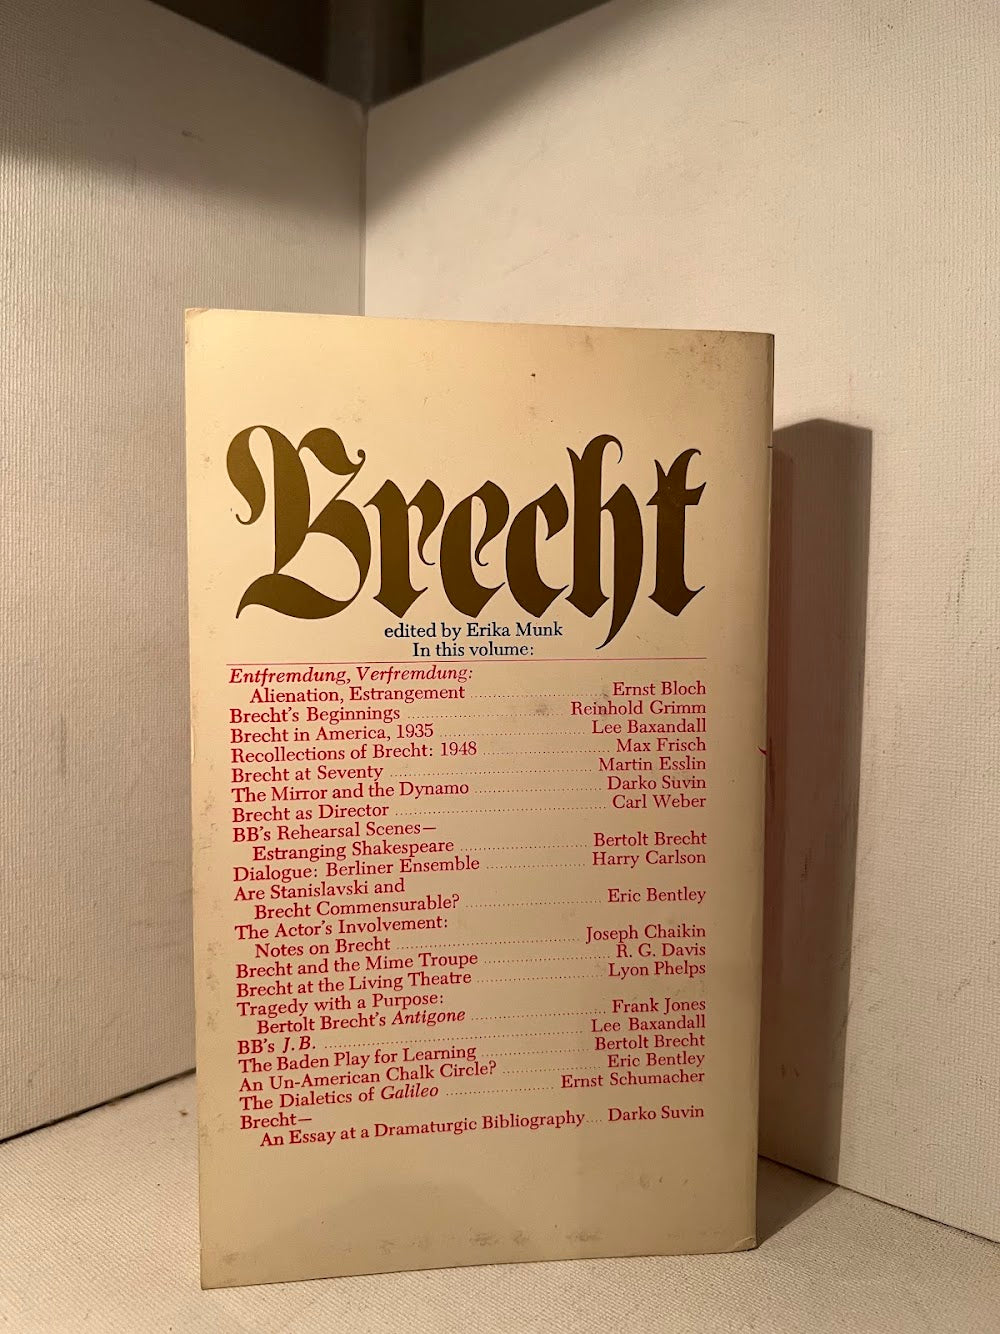 Brecht edited by Erika Munk